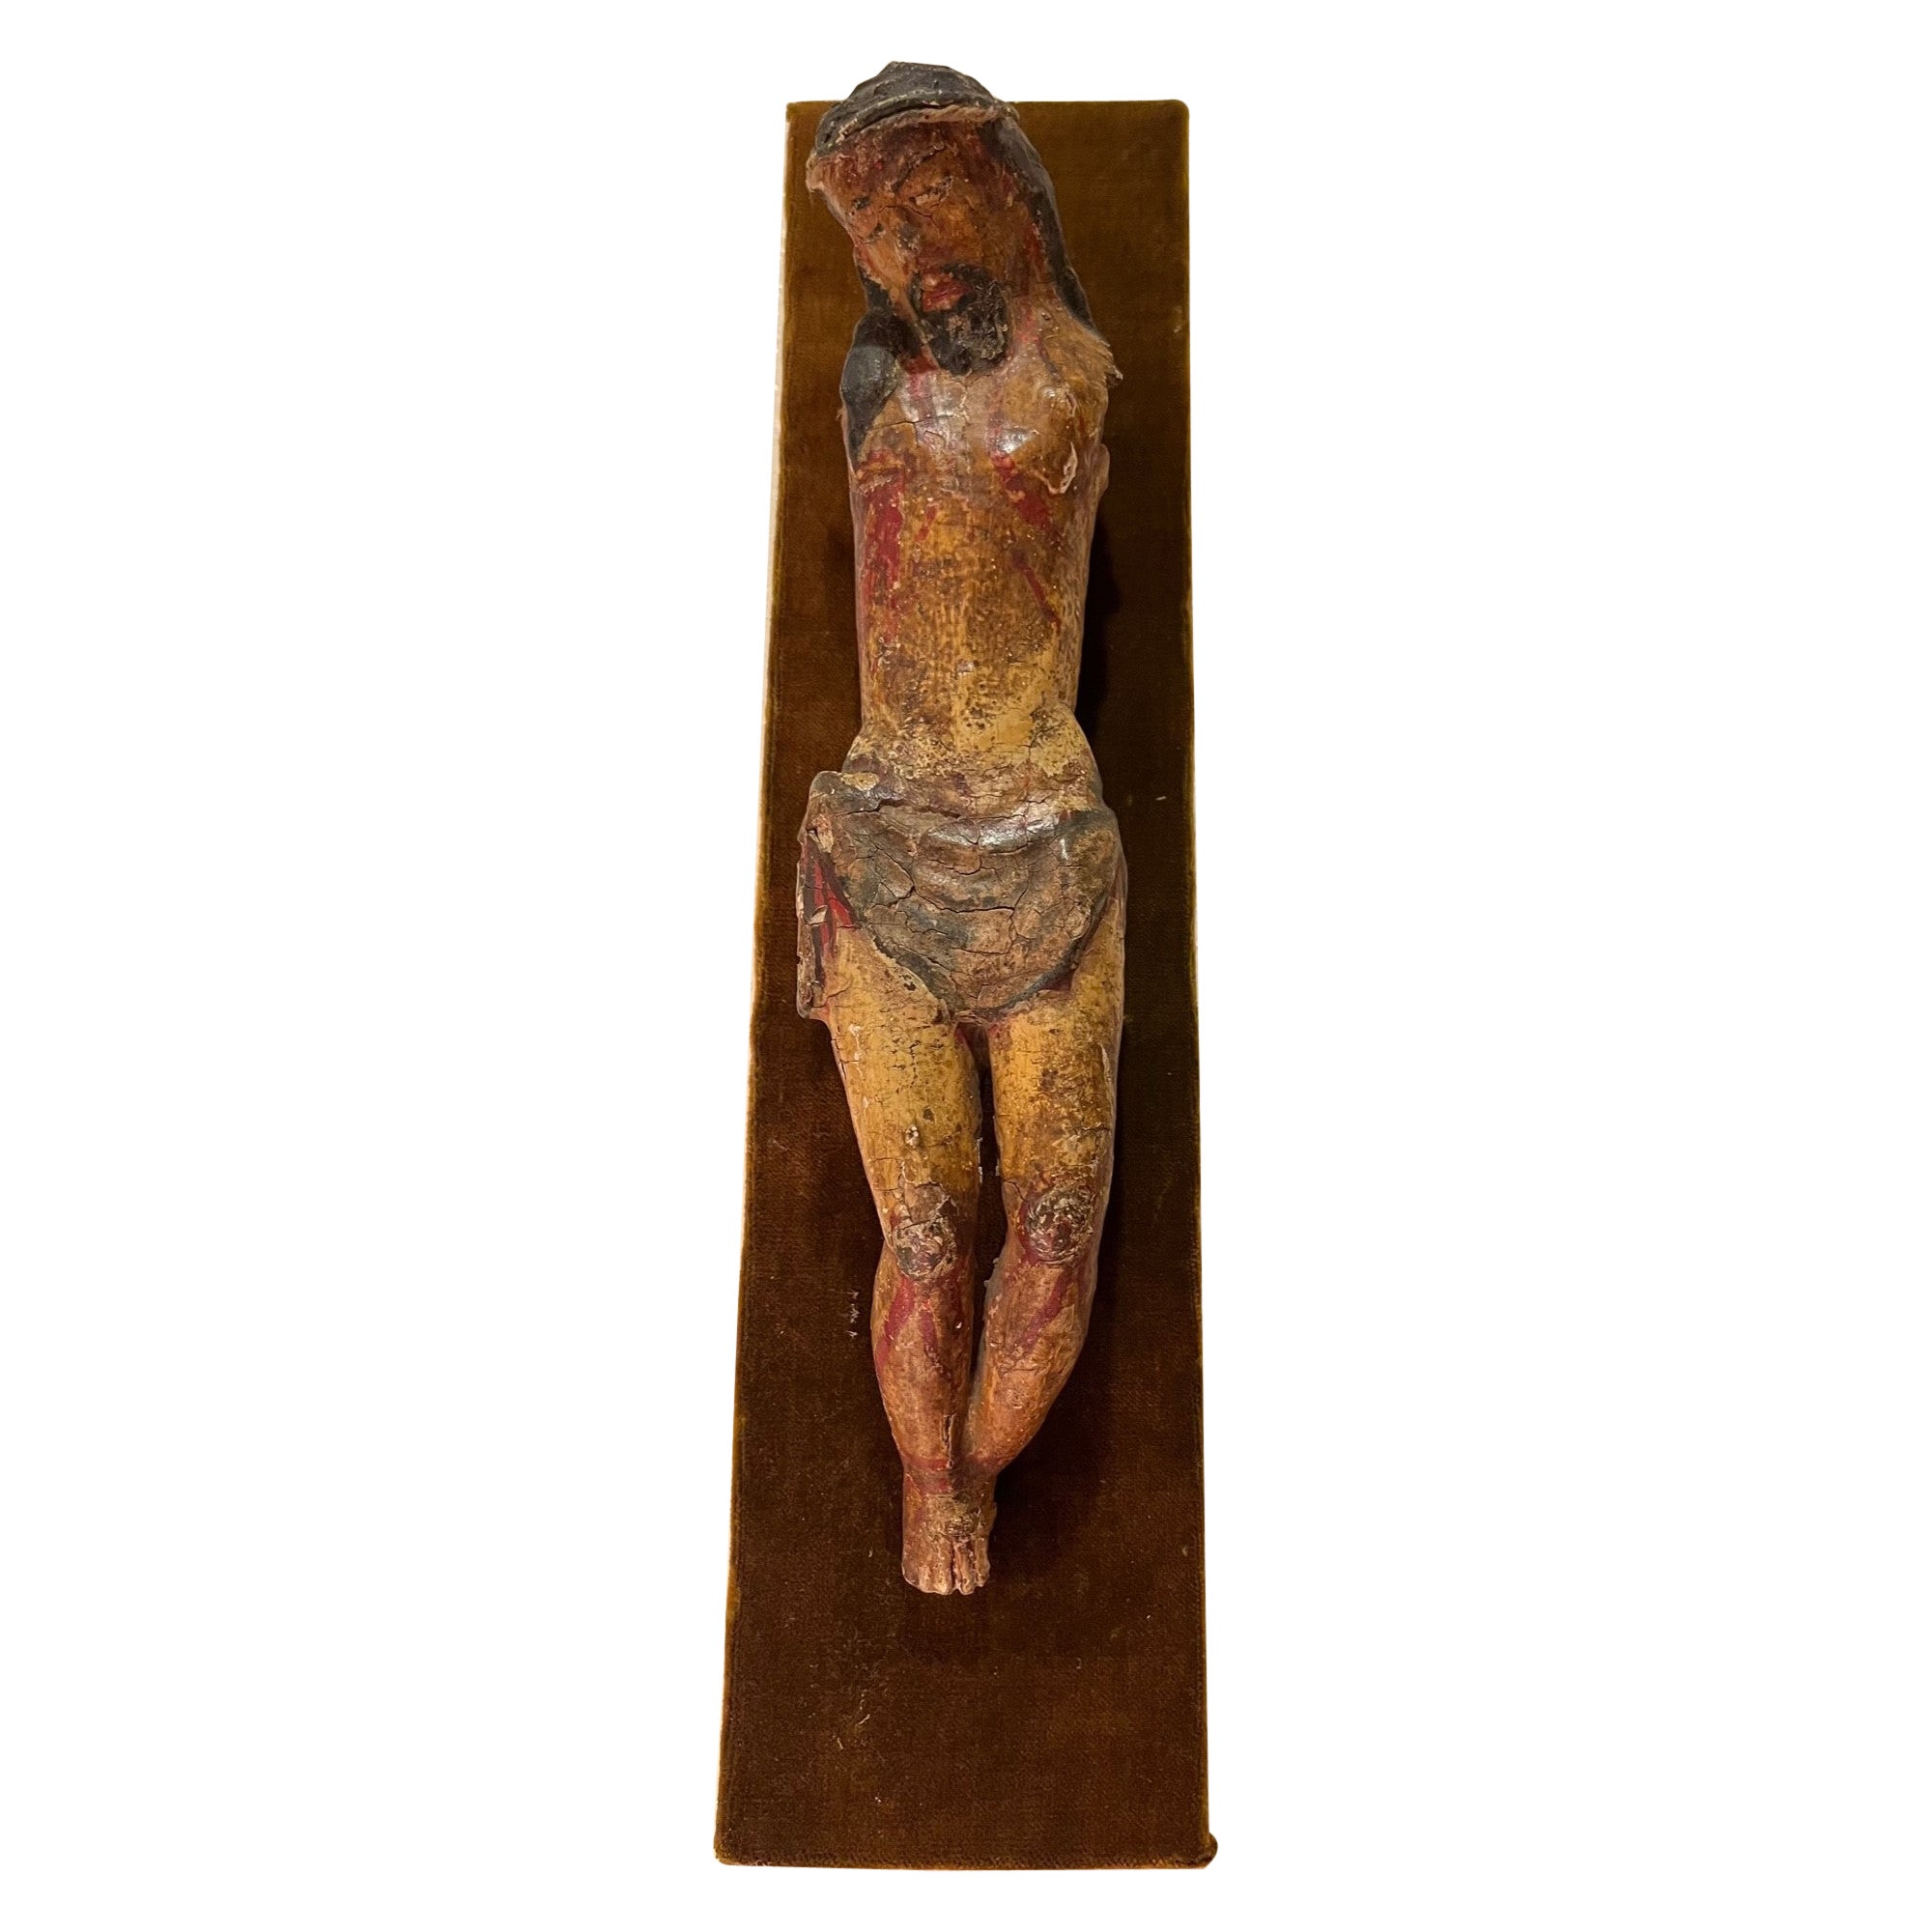  Holzgeschnitzte polychrome Holzskulptur des Corpus Christi aus der Periode des 13. Jahrhunderts